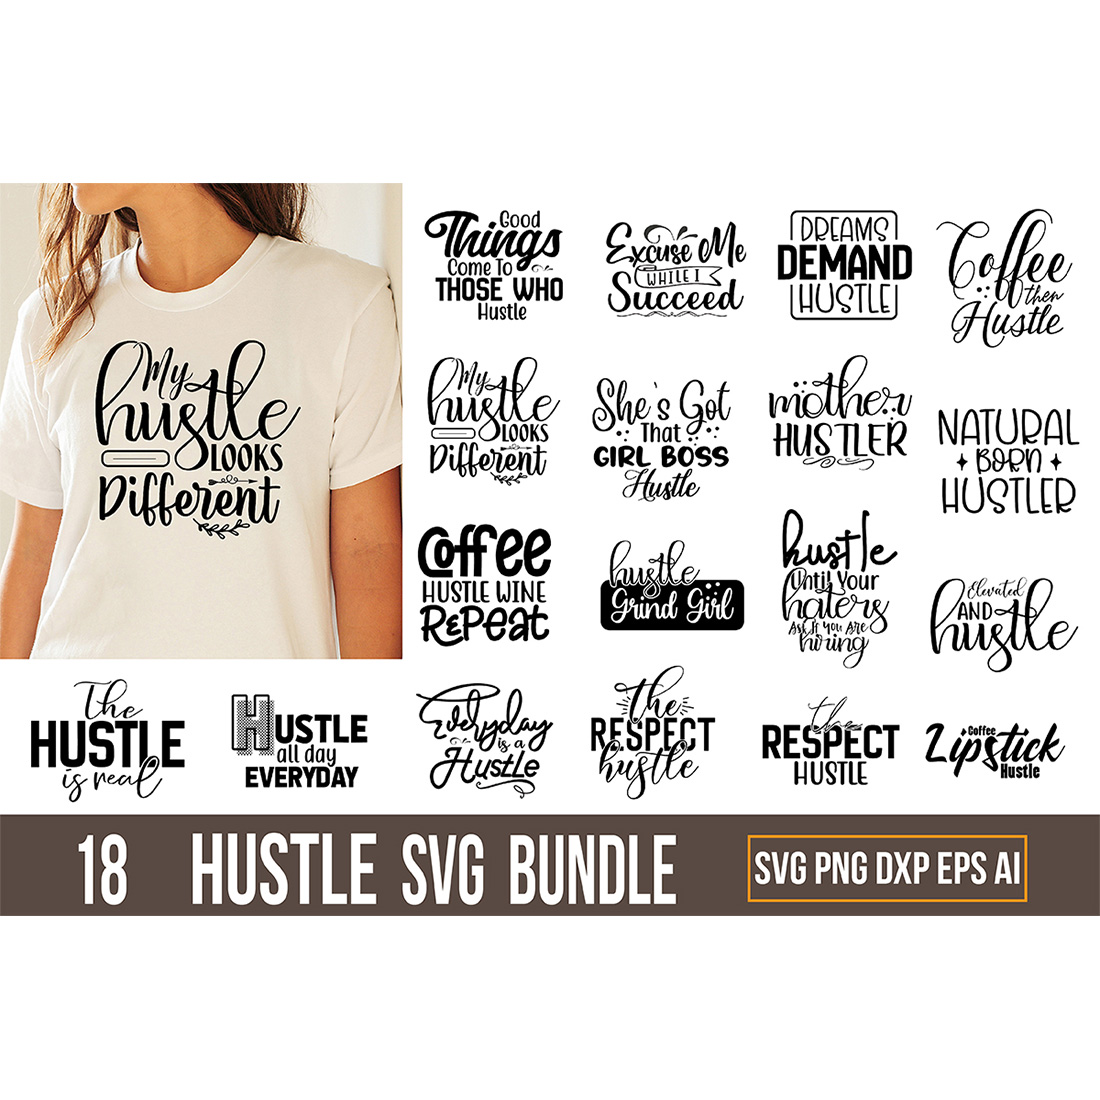 T-shirt Typography Hustle SVG Design Bundle cover image.